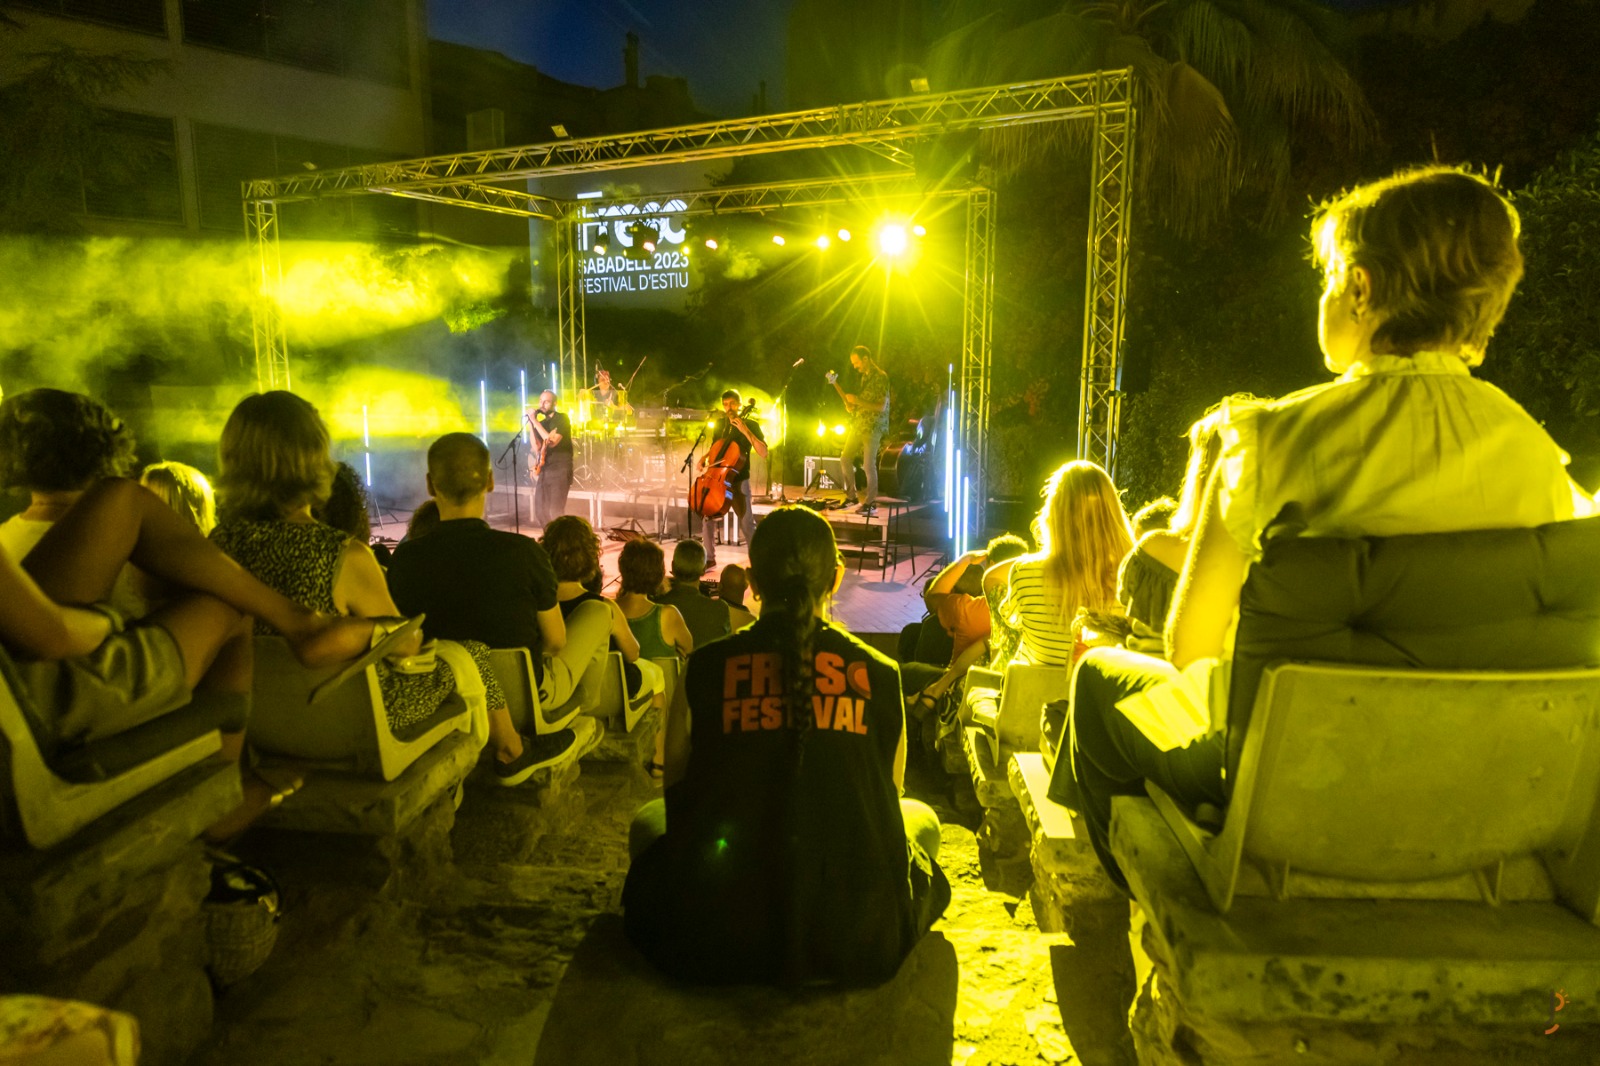 Concert de Blaumut al Fresc, el Festival d'Estiu de Sabadell